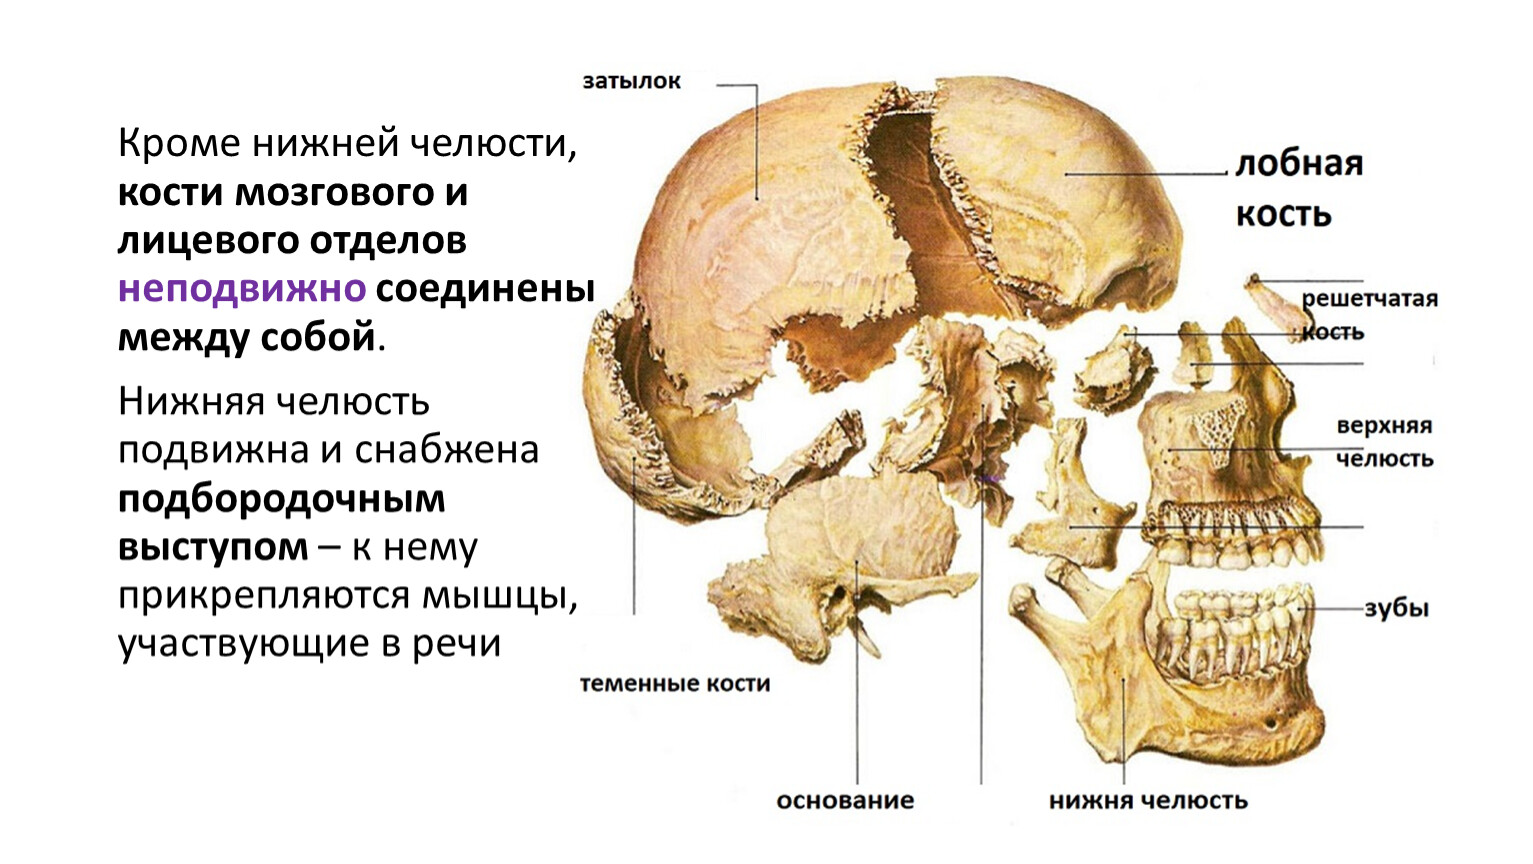 Теменная кость отдел. Теменная кость кость кость. Теменные кости черепа. Кости черепа теменная кость. Кости черепа теменная кость анатомия.